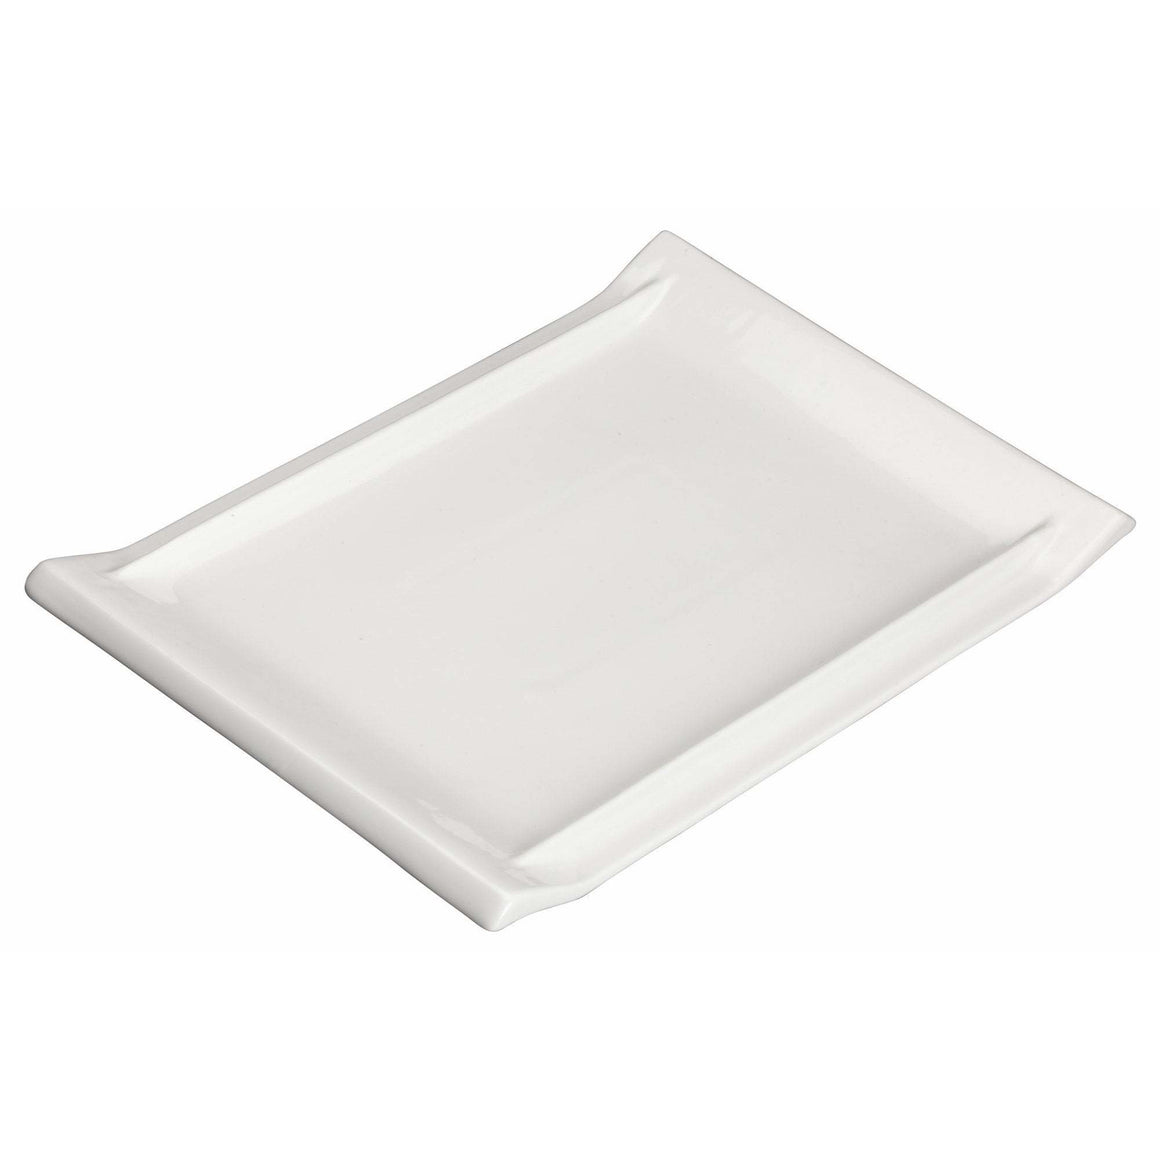 Winco - WDP017-114 - 15-5/8" x 10-5/8" Porcelain Rectangular Platter, Bright White, 12 pcs/case - Dinnerware - Maltese & Co New and Used  restaurant Equipment 